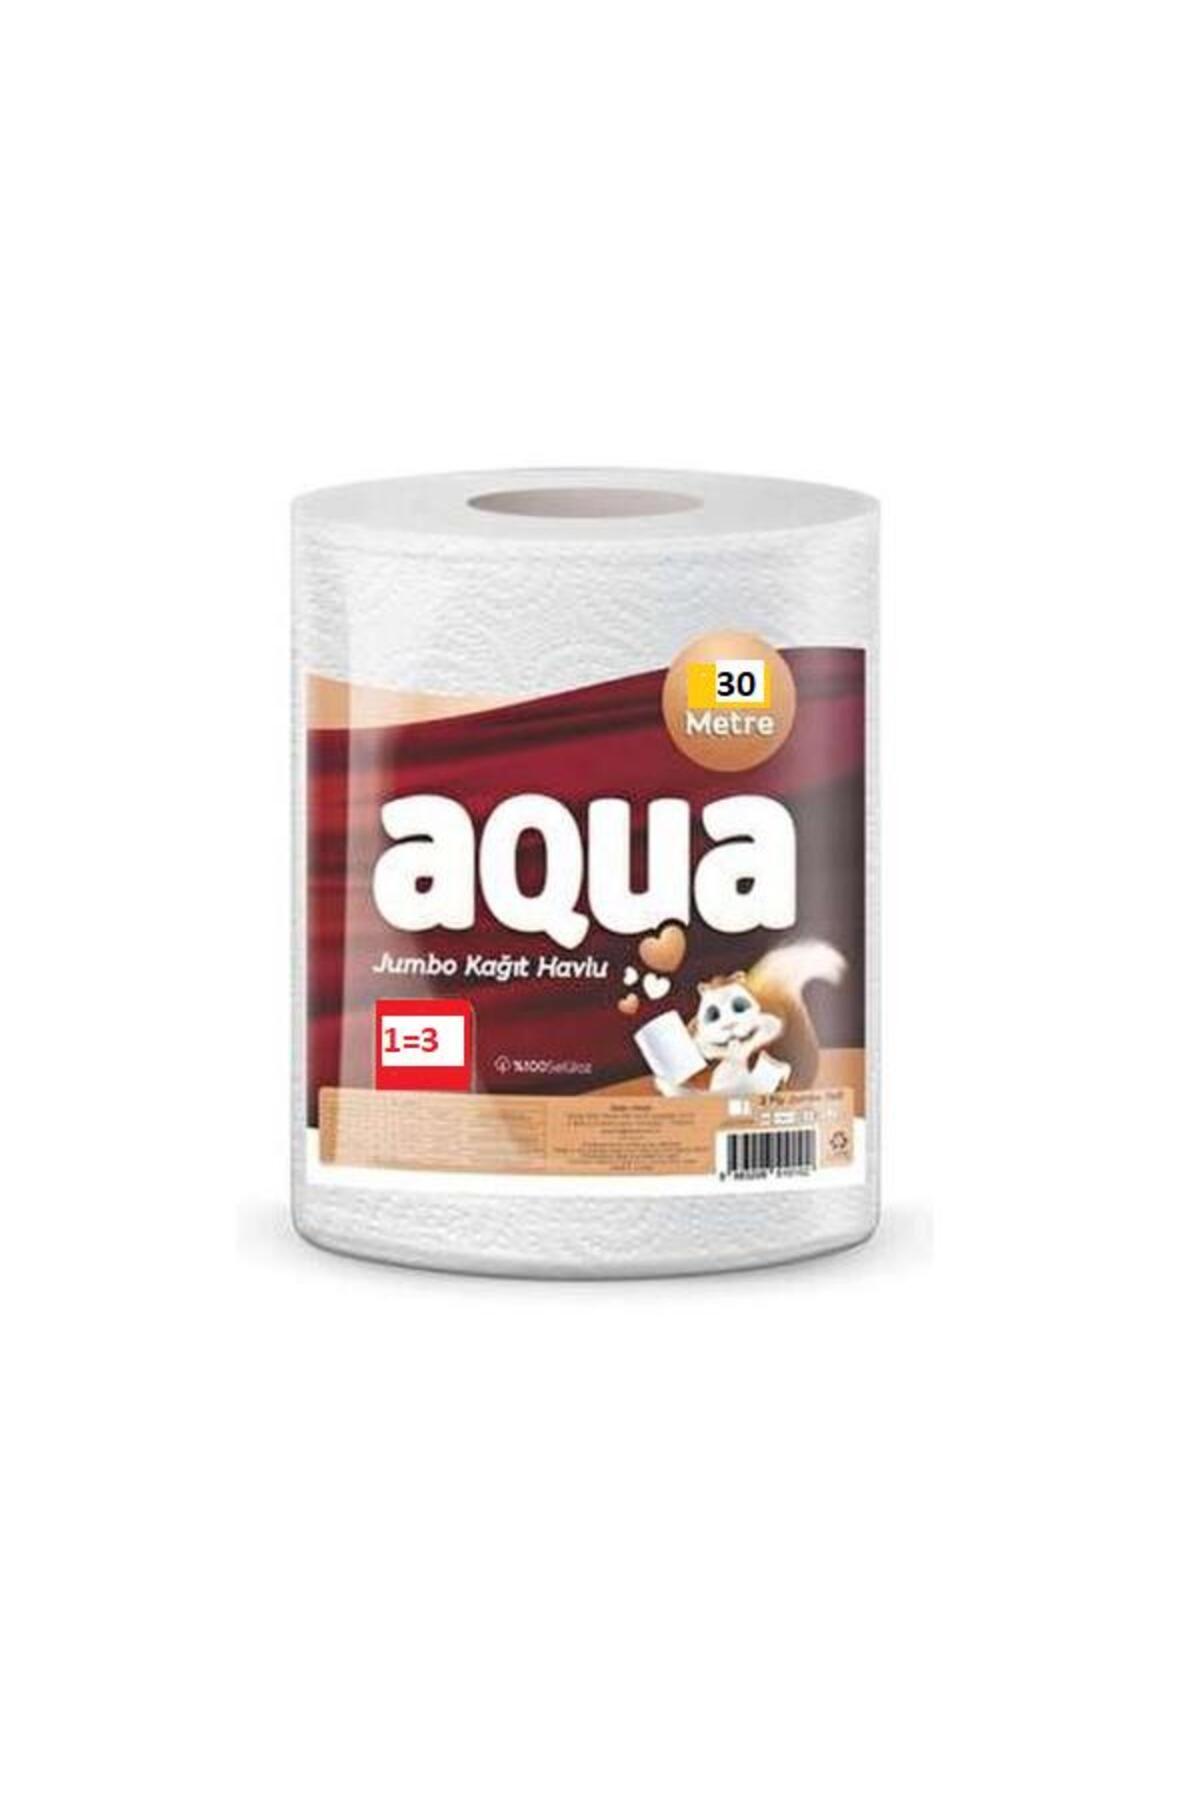 Aqua Kağıt Havlu Dev 1=3 30 Metre